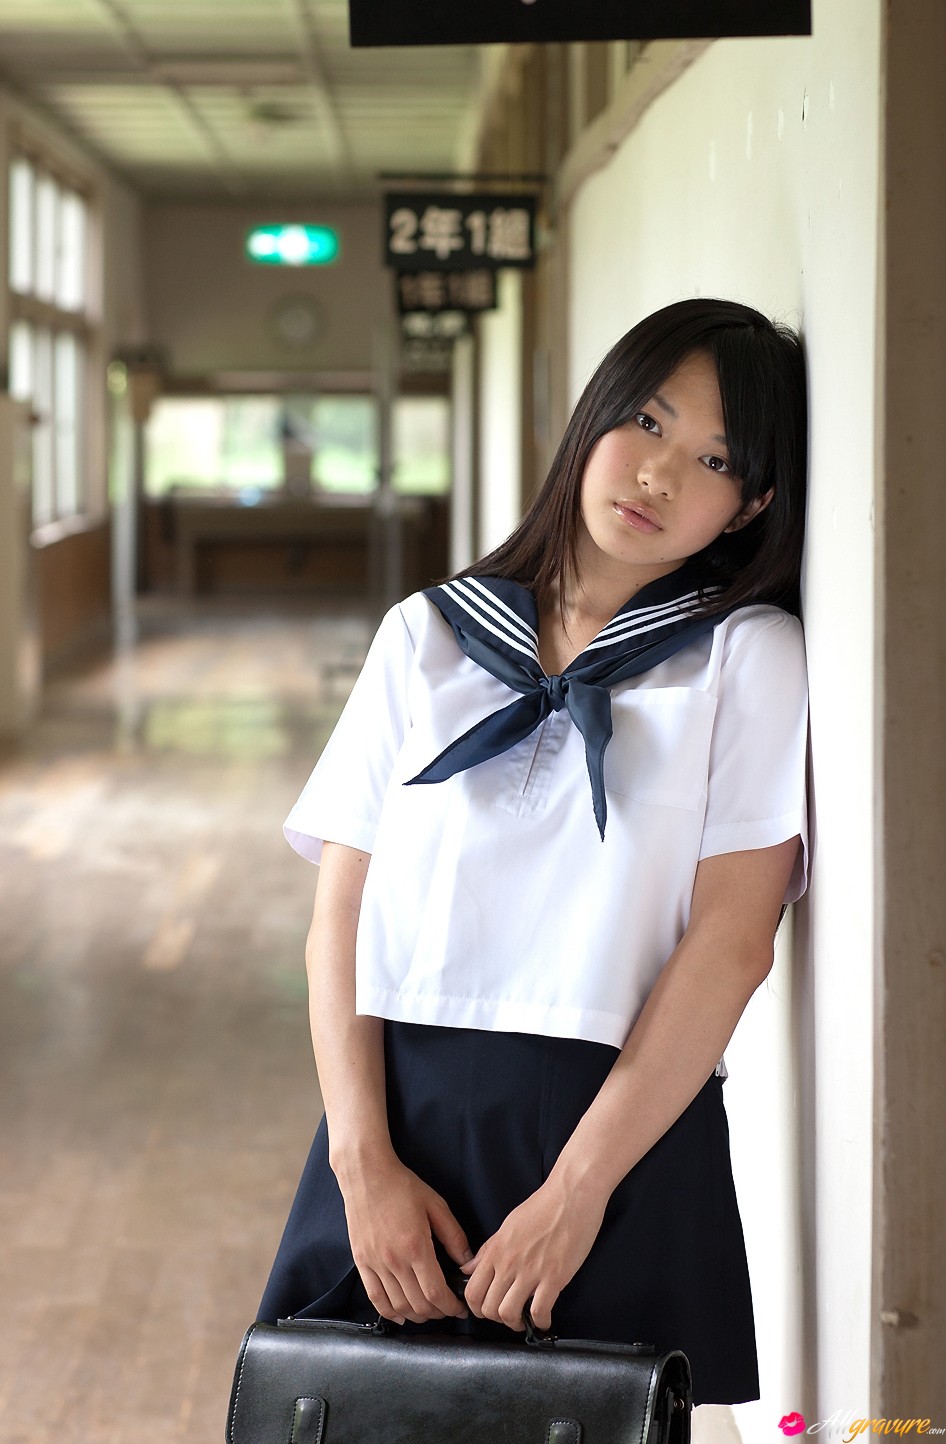 真实的日本校园开放少女教室大胆脱裙诱惑美女人体艺术写真高清图片